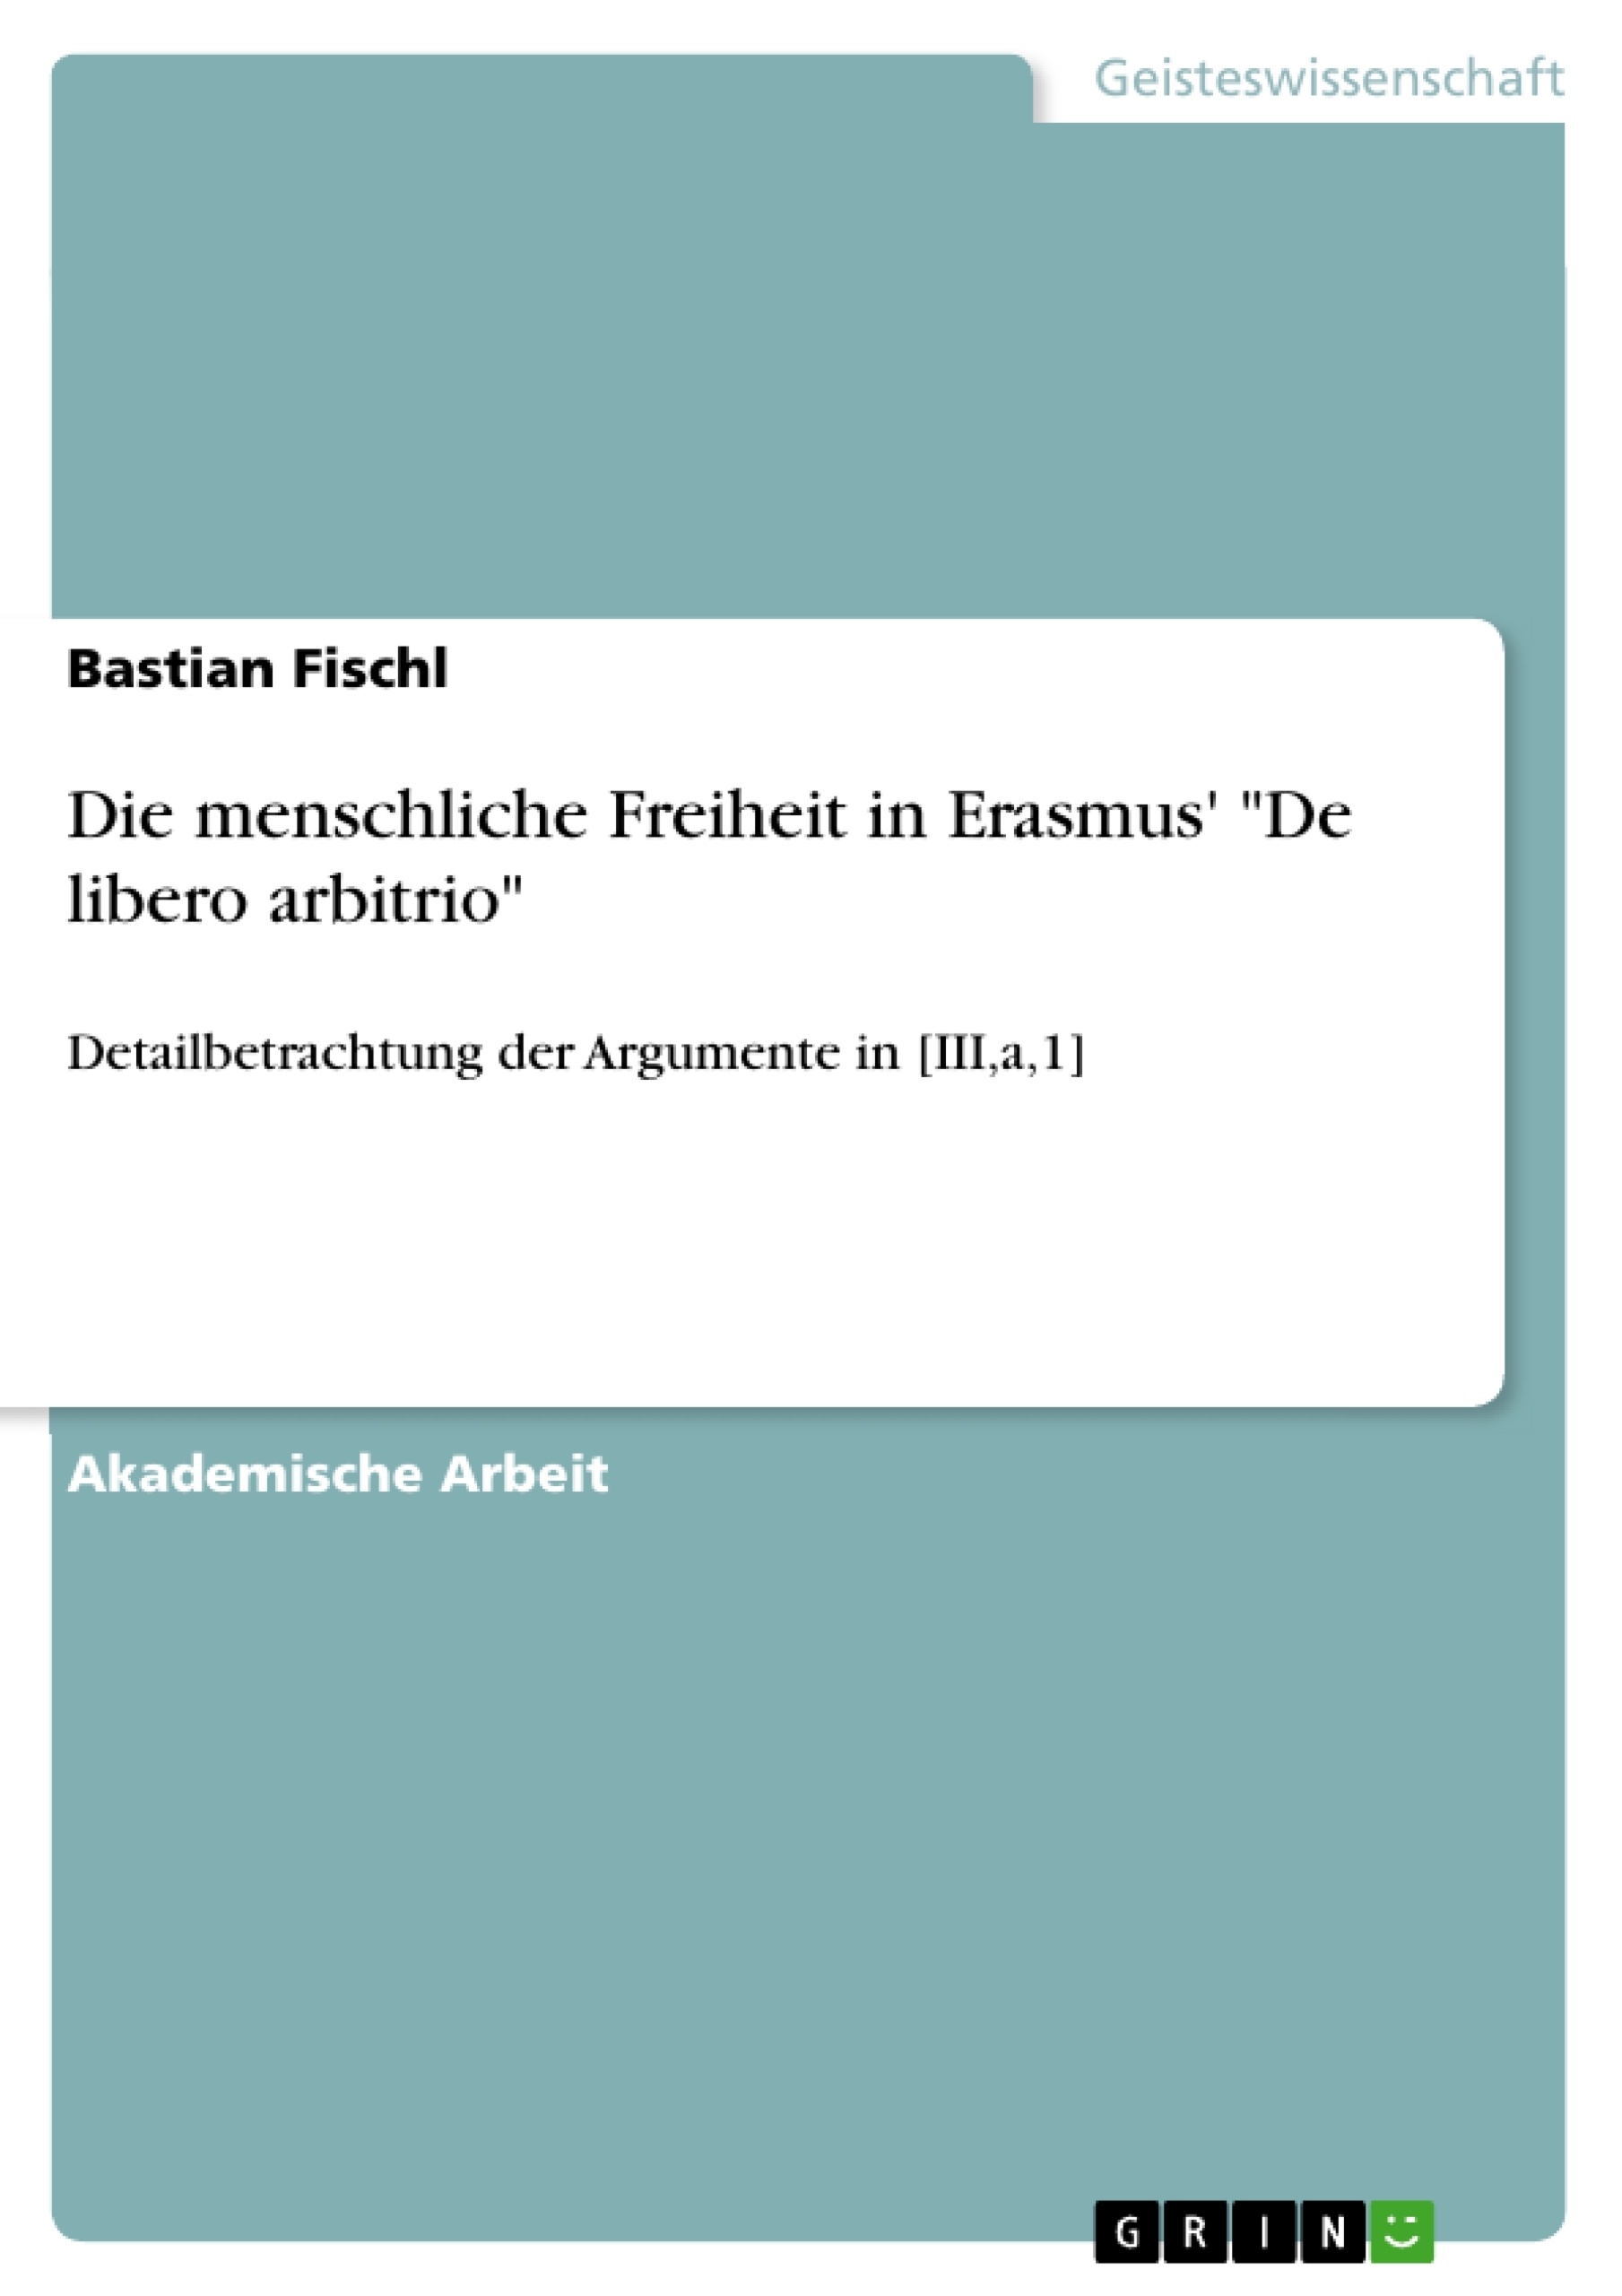 Título: Die menschliche Freiheit in Erasmus' "De libero arbitrio"